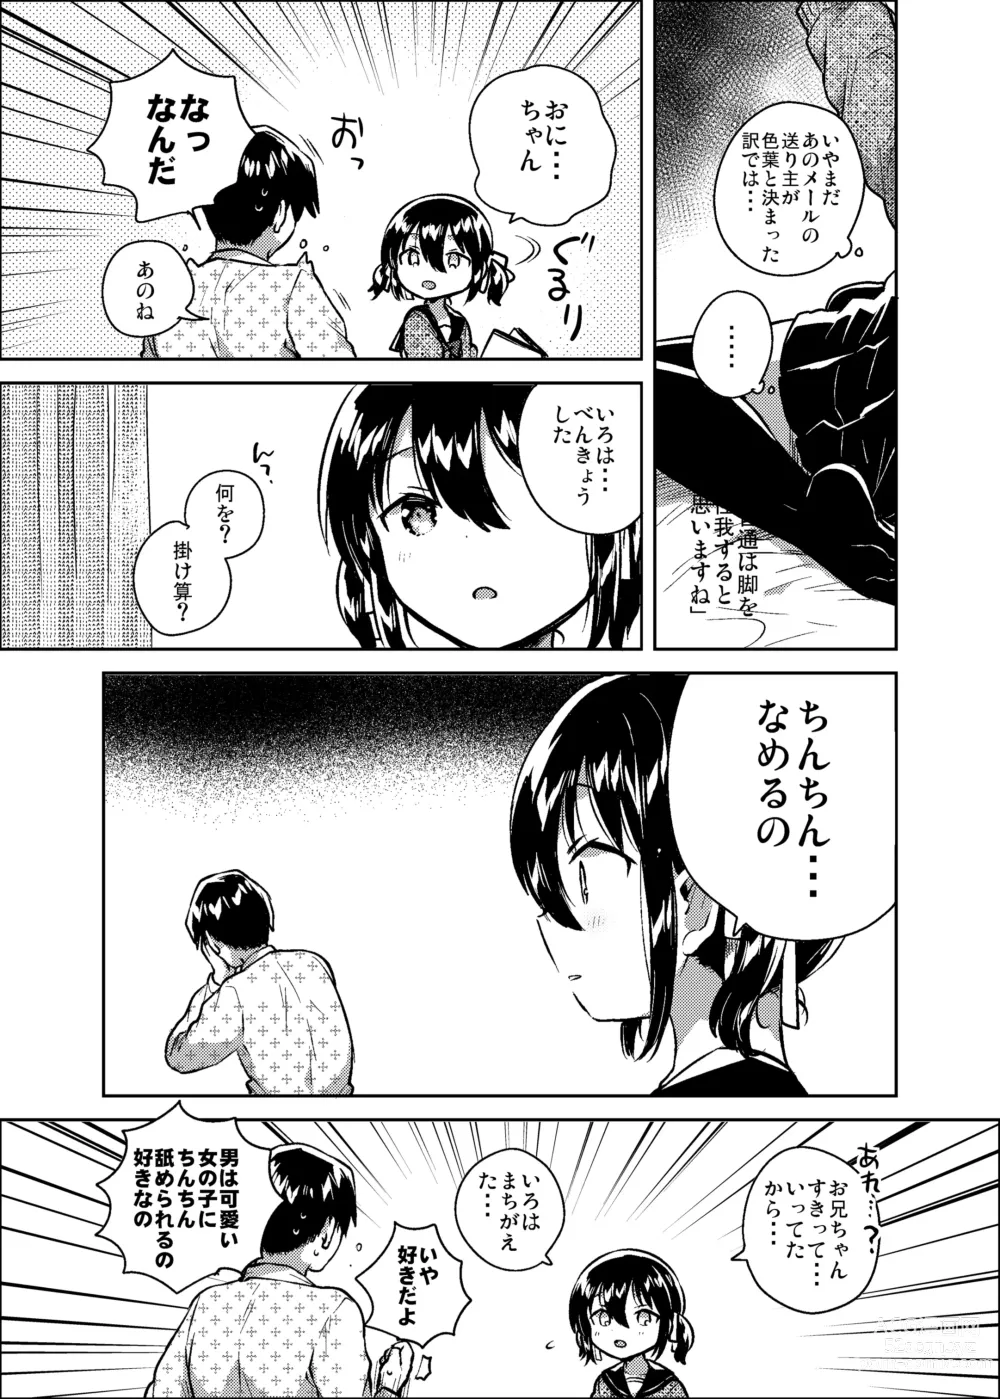 Page 7 of doujinshi Imouto wa Kanji ga Yomenai